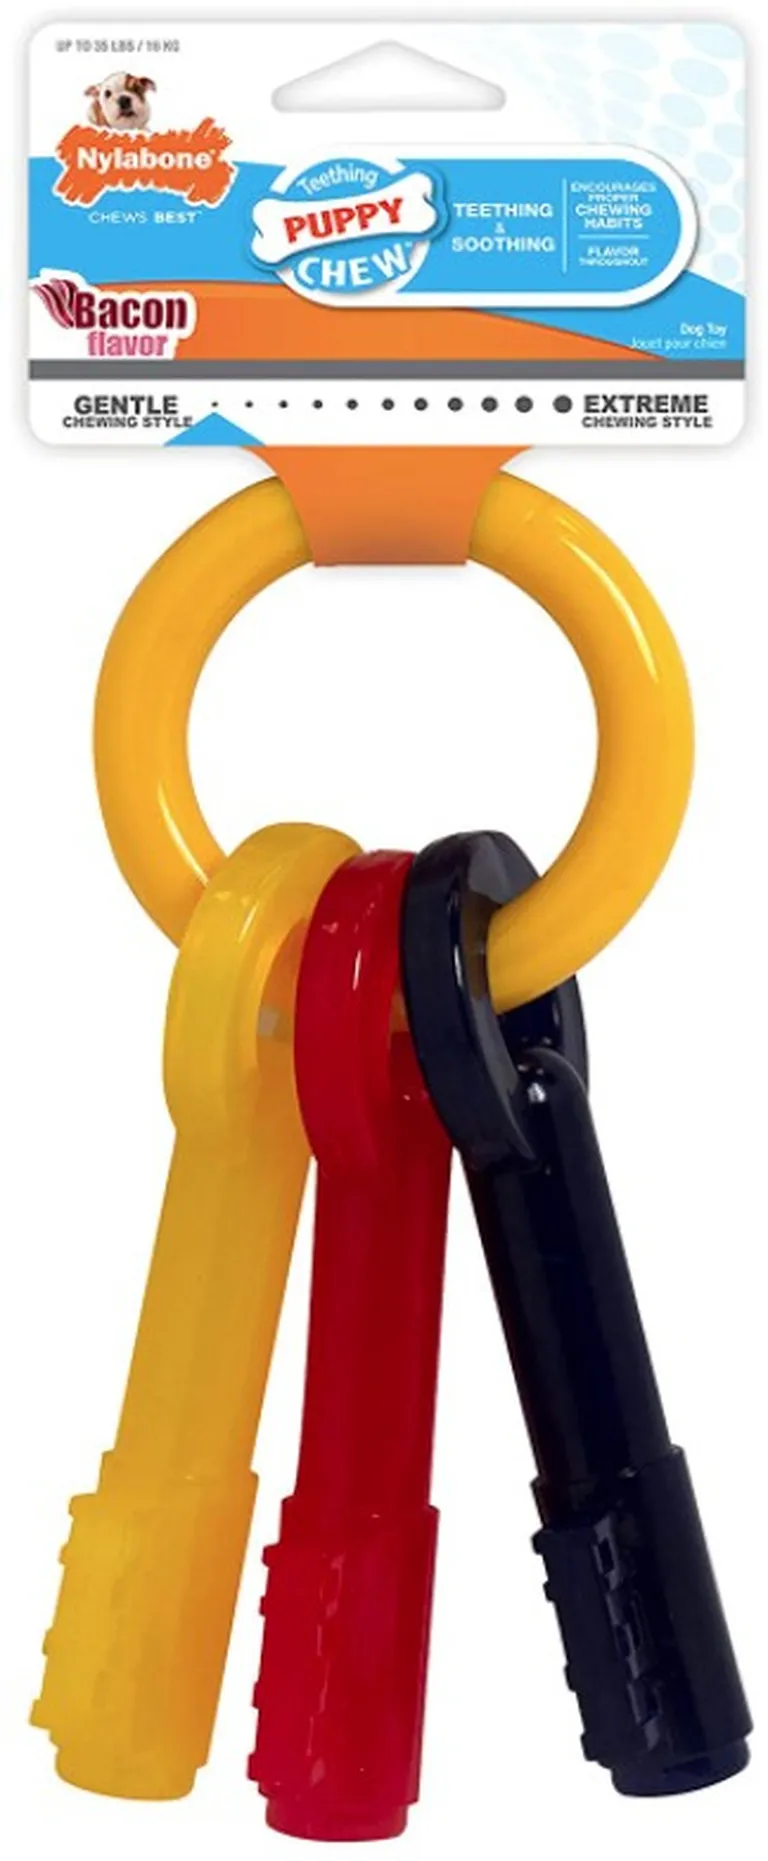 Nylabone Puppy Chew Teething Keys Toy Photo 1